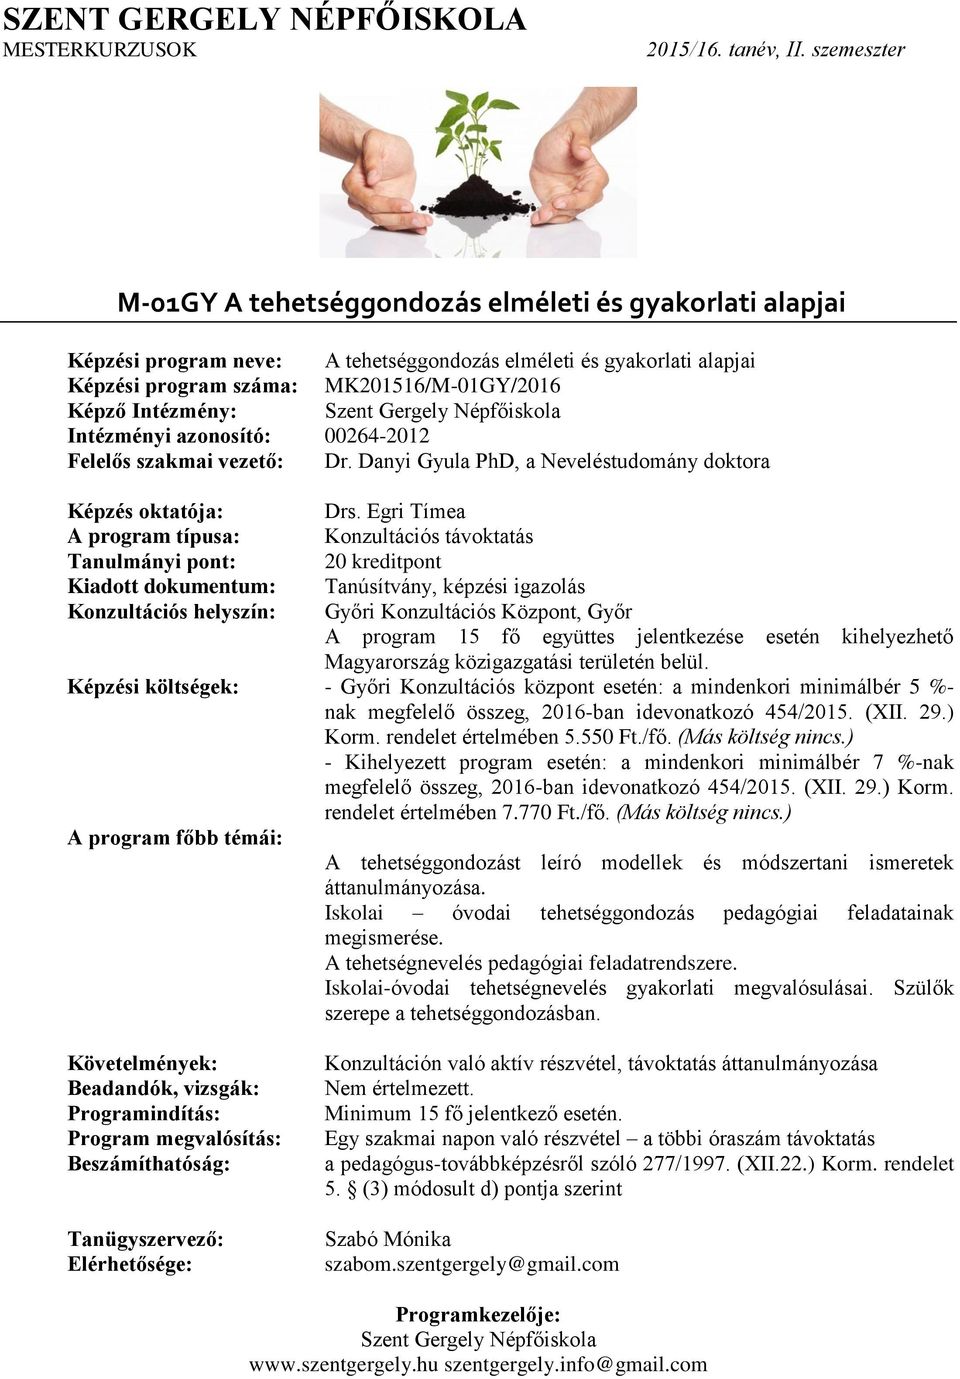 Egri Tímea Győri Konzultációs Központ, Győr Képzési költségek: - Győri Konzultációs központ esetén: a mindenkori minimálbér 5 %- A tehetséggondozást